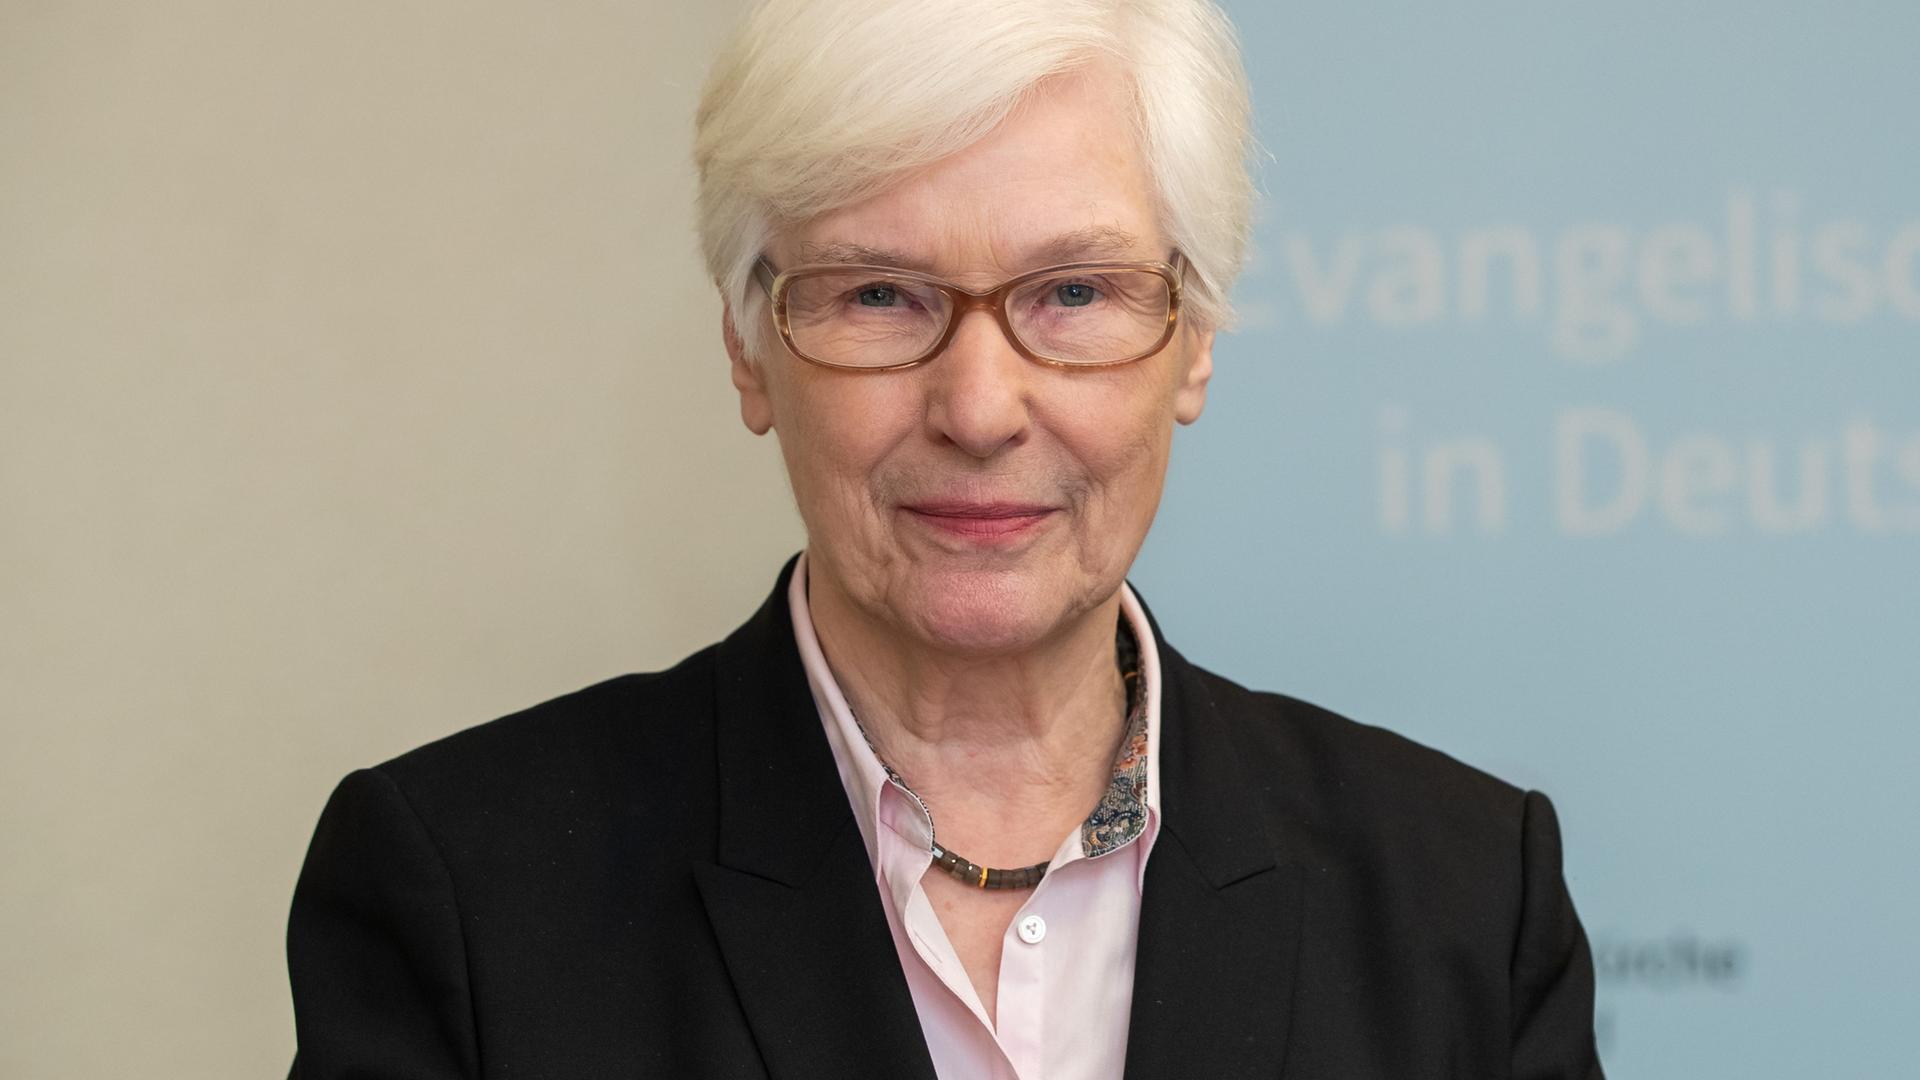 Irmgard Schwaetzer im Jahr 2018 in ihrer damaligen Funktion als Präses der Synode der Evangelischen Kirche in Deutschland.